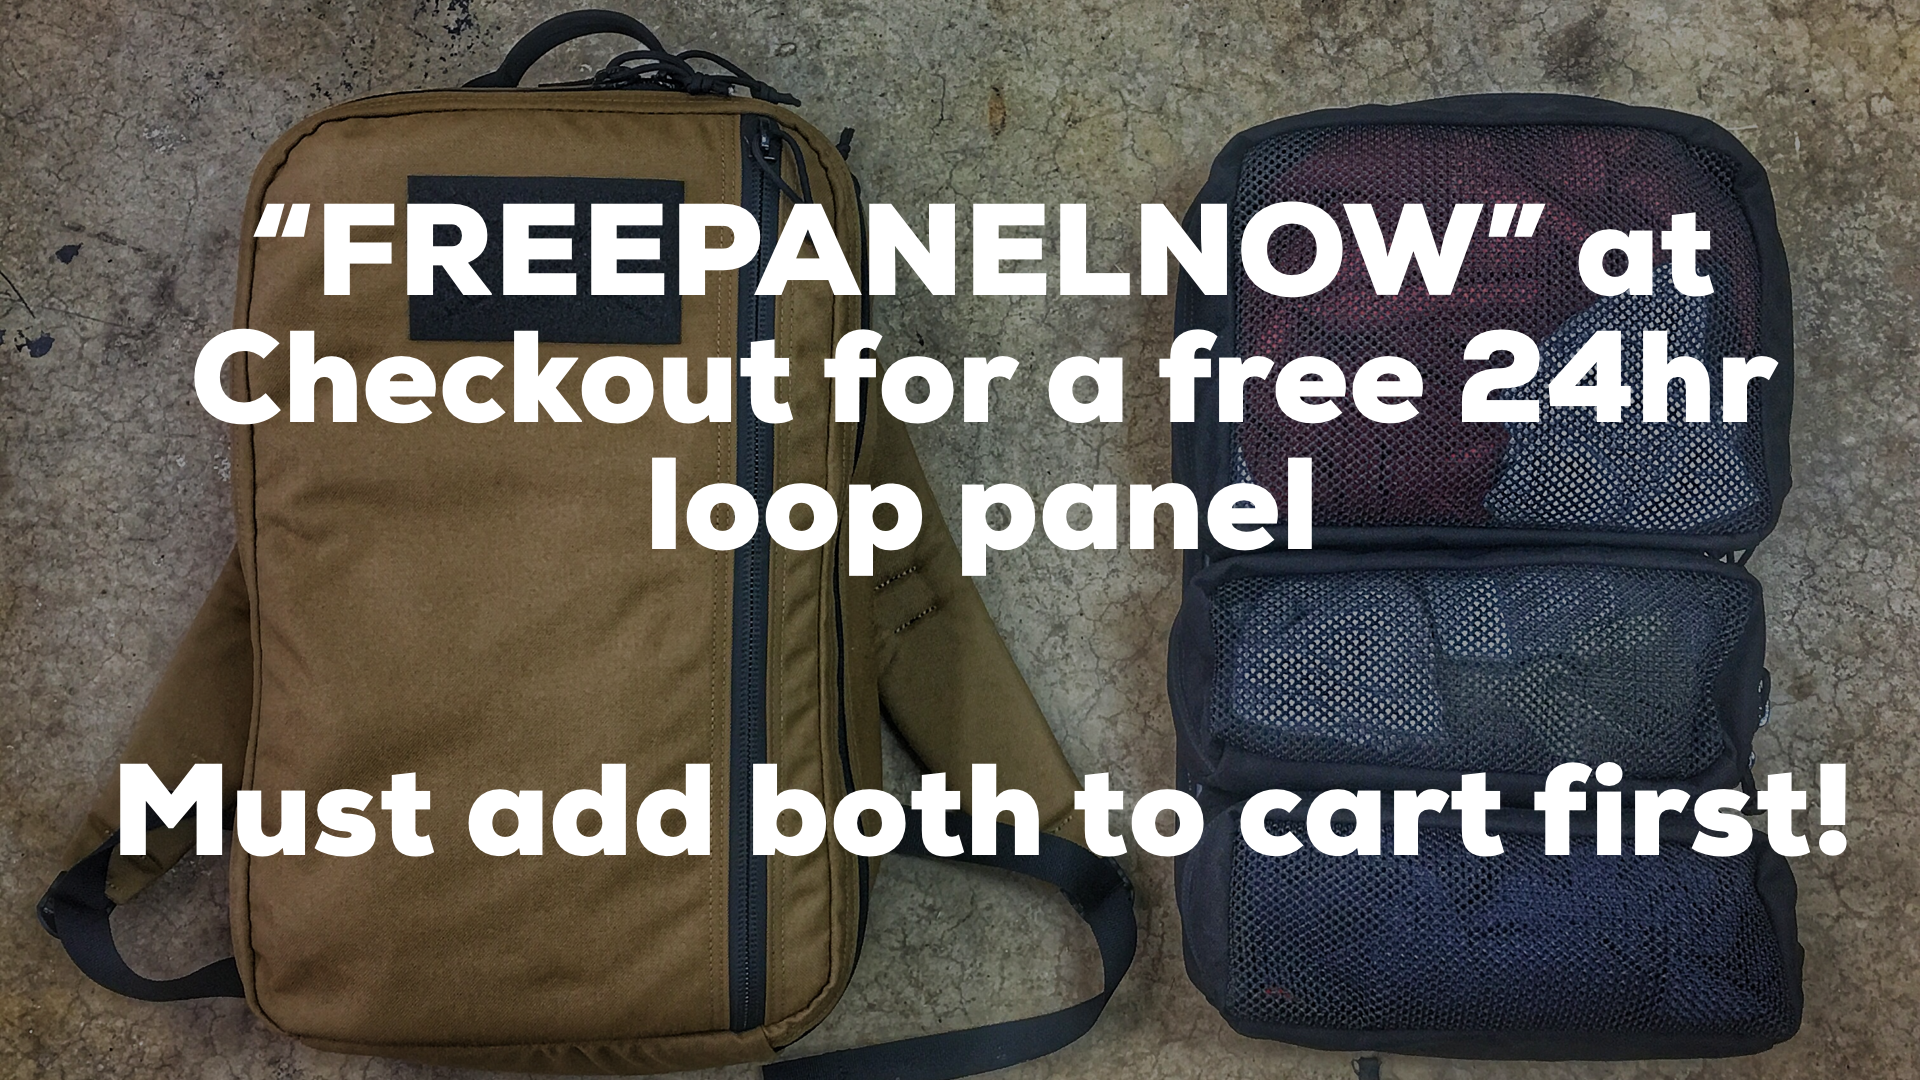 Buy a 24hr Get a FREE Loop Panel